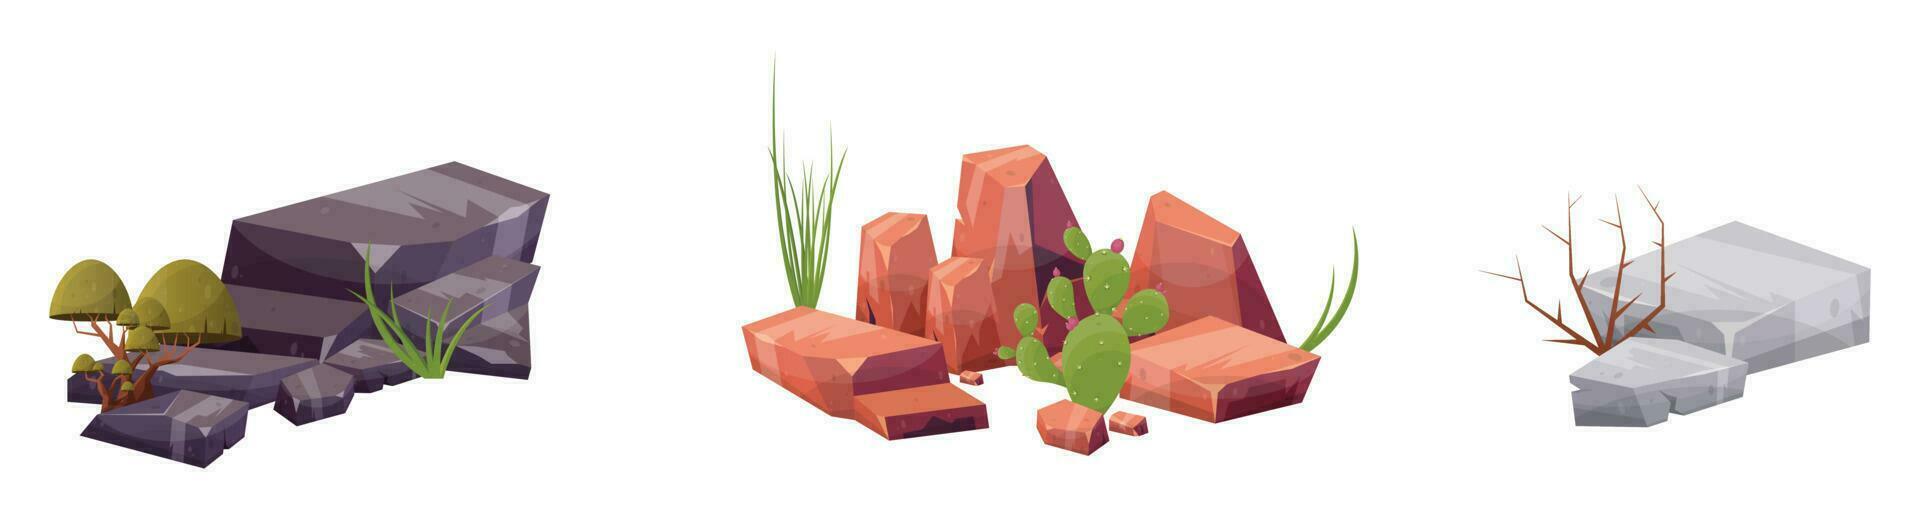 öken- sten med växter i annorlunda färger vektor illustration isolerat på vit